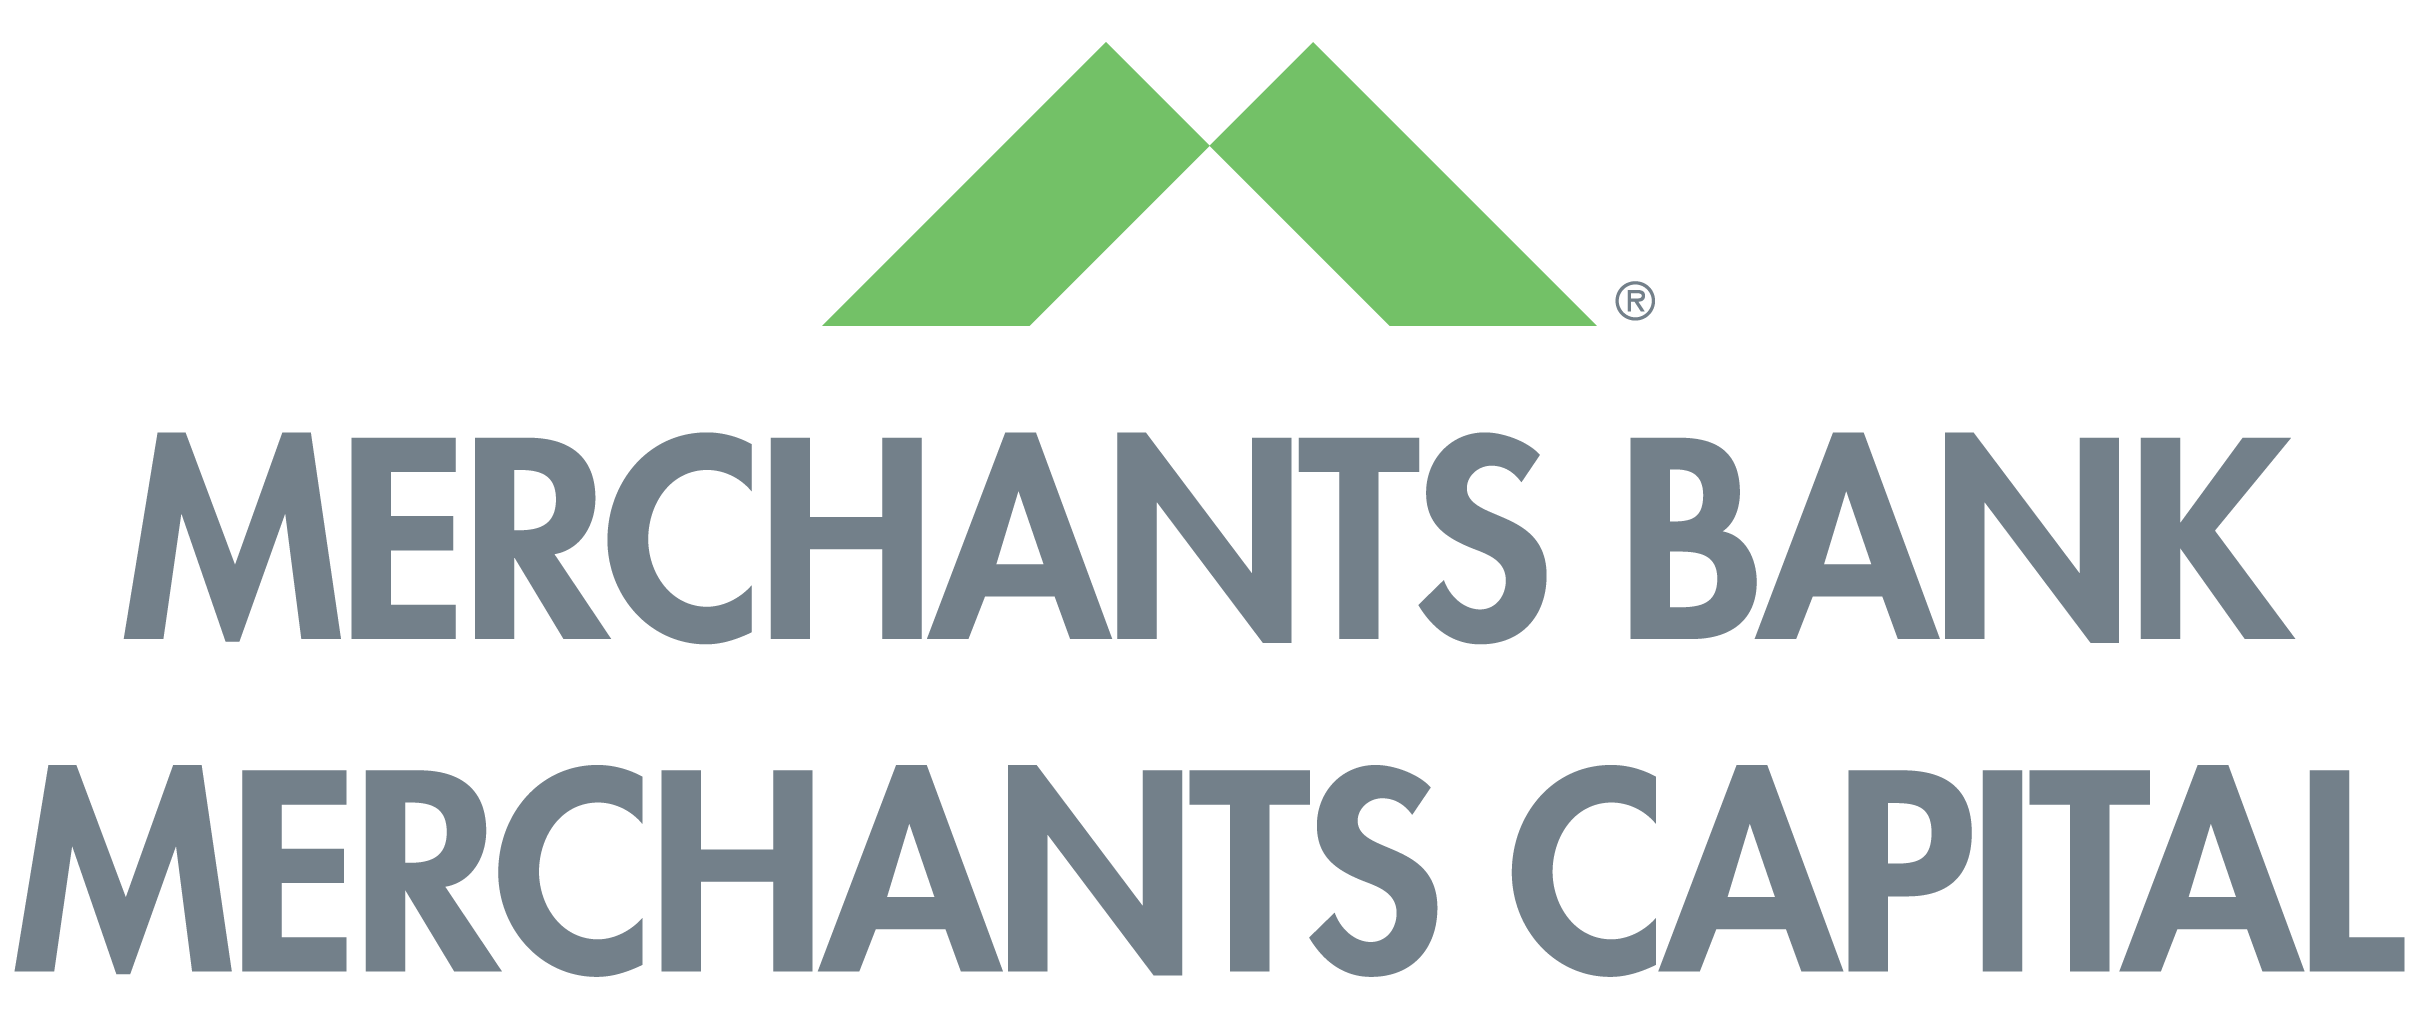 Merchants Bank / Merchants Capital logo